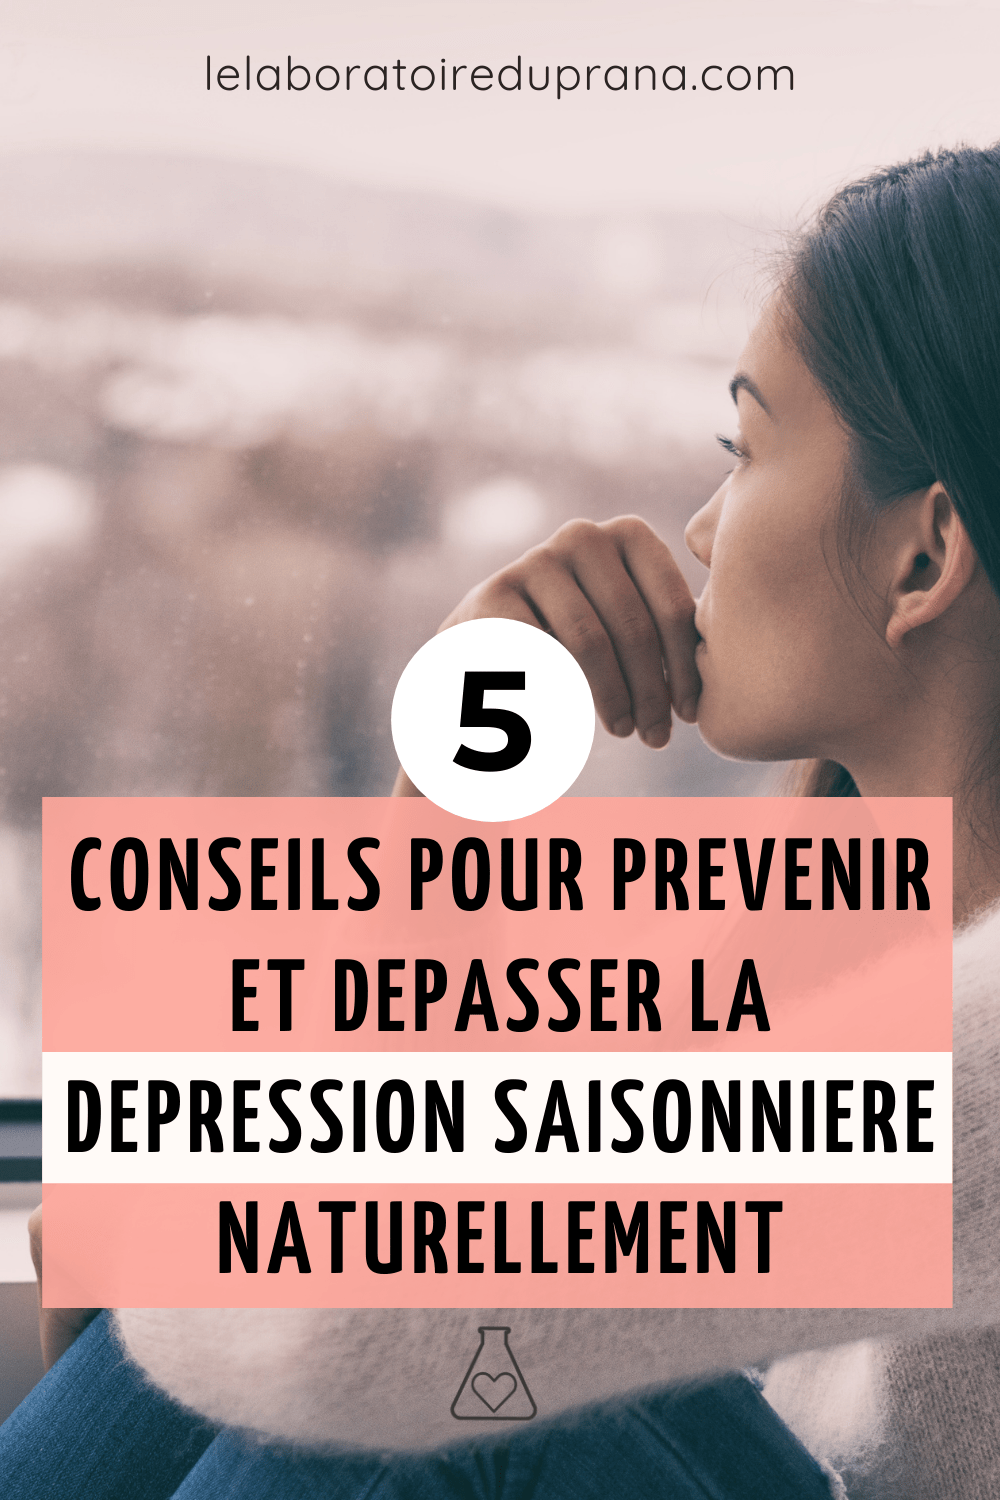 5 conseils pour prévenir et dépasser la dépression saisonnière naturellement